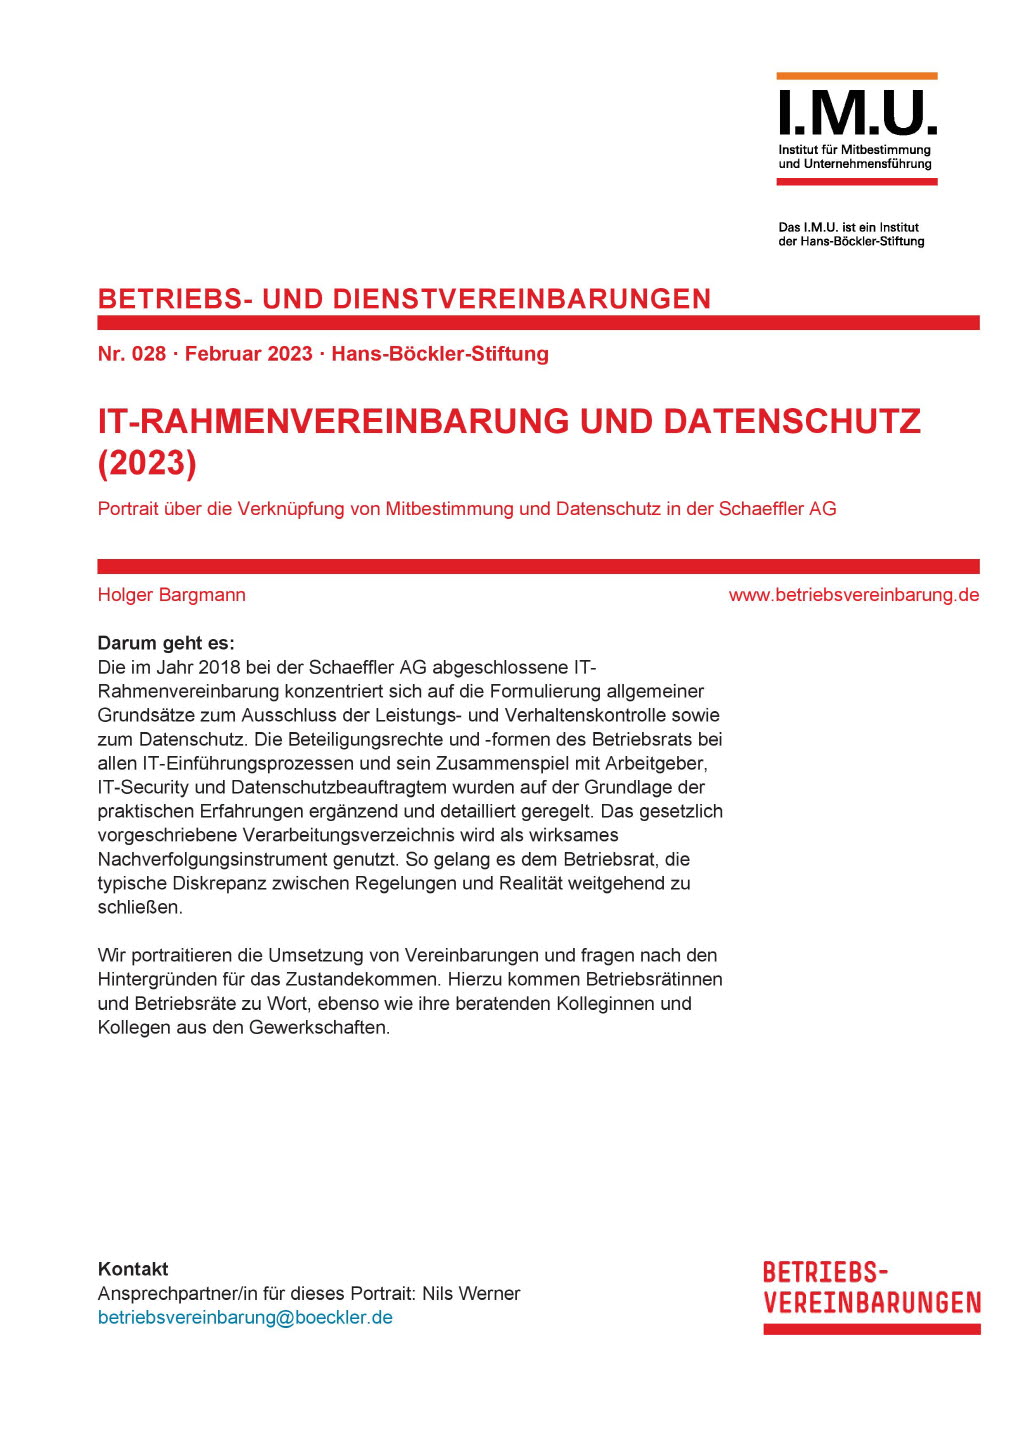 IT-Rahmenvereinbarung und Datenschutz (2023)